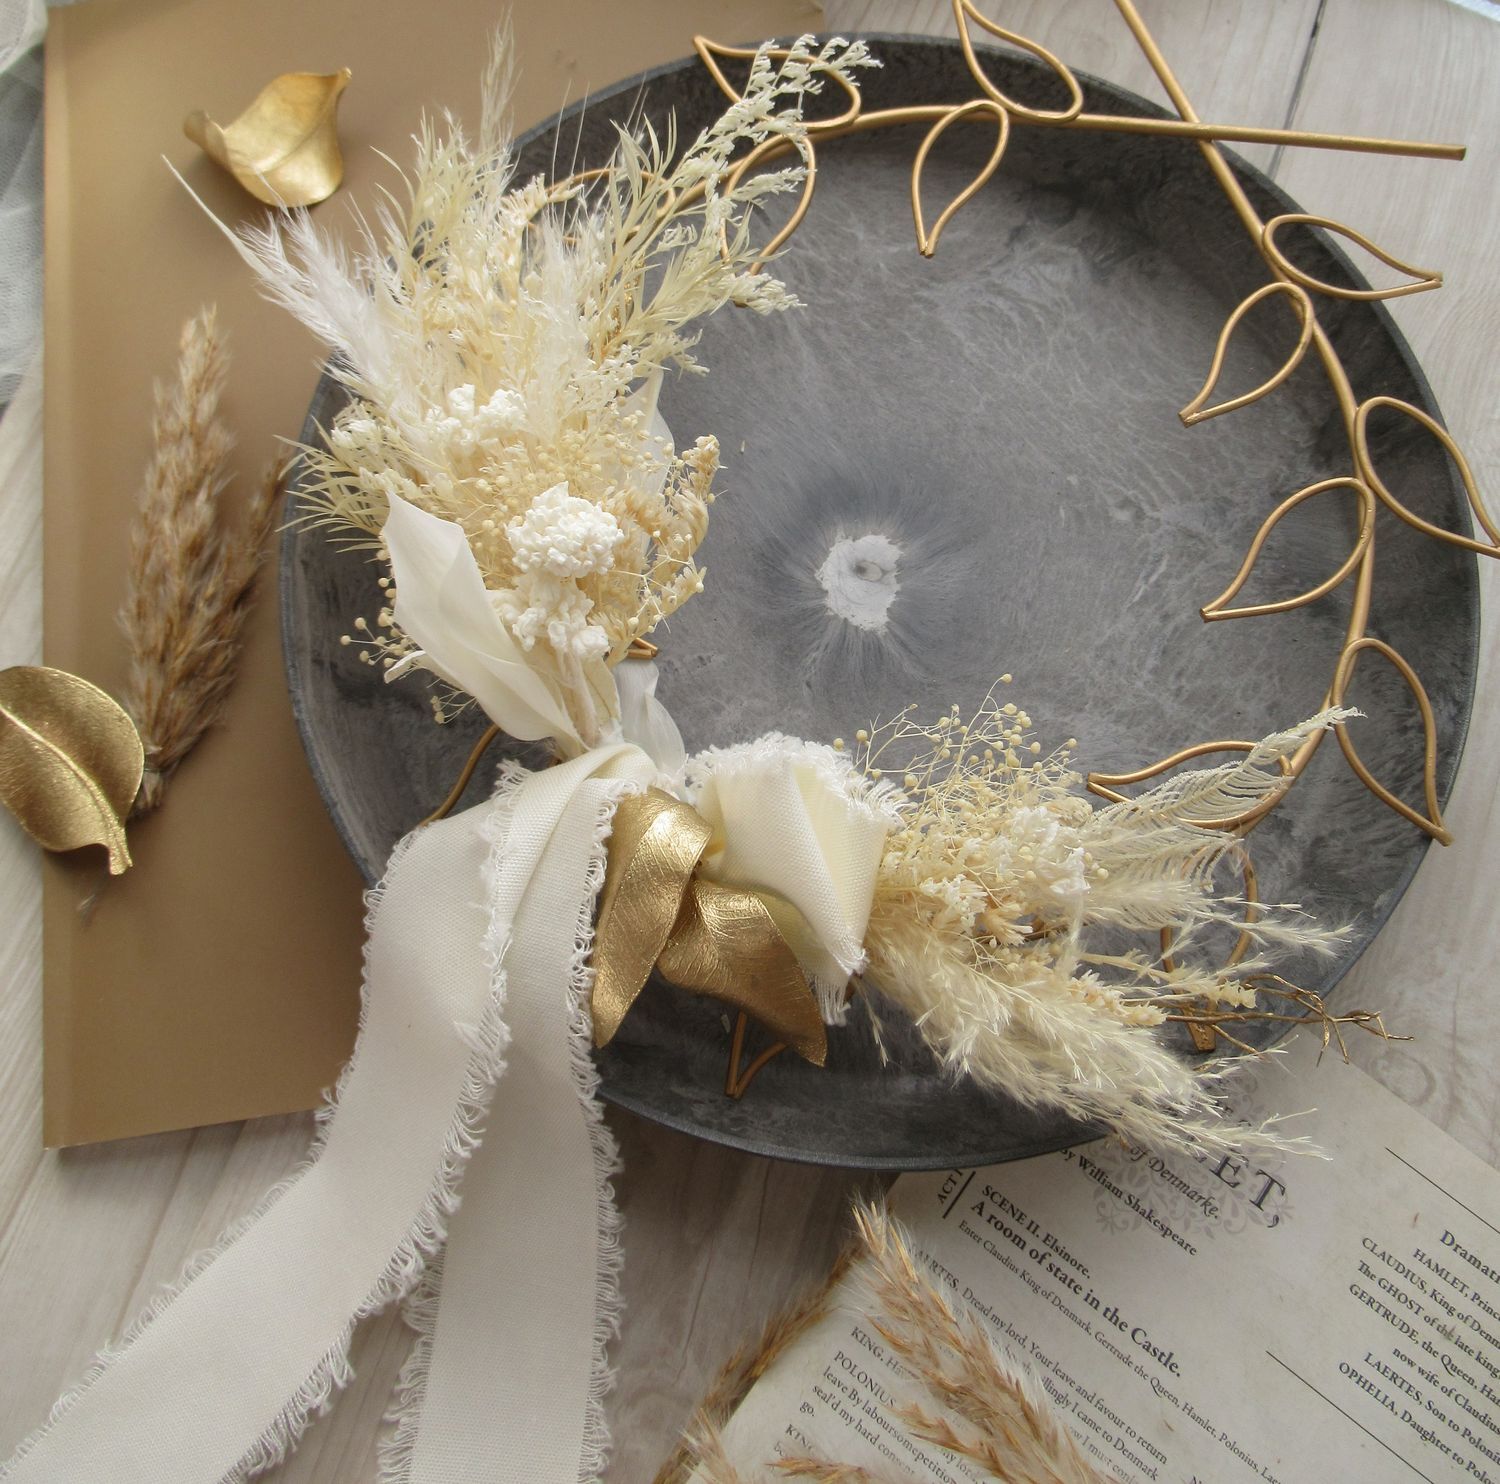 【プリザーブドフラワー・ドライフラワー】laurel wreath～パンパスとカスミソウの月桂冠